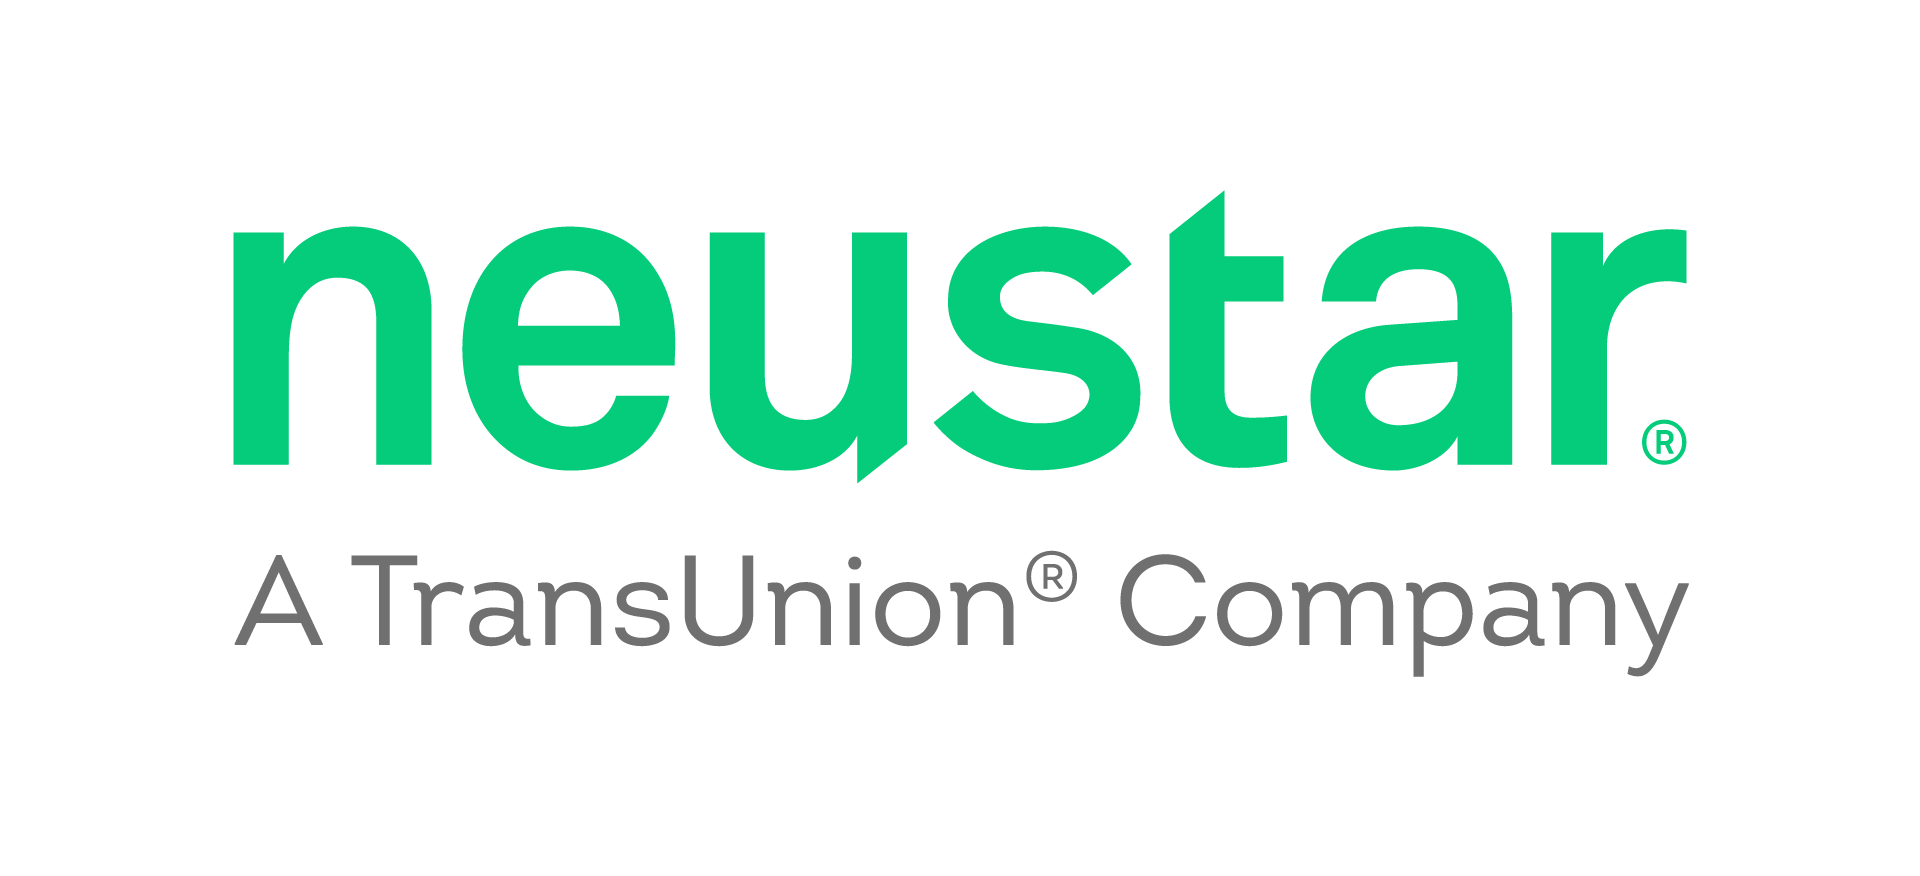 Neustar a TransUnion Company (formerly)